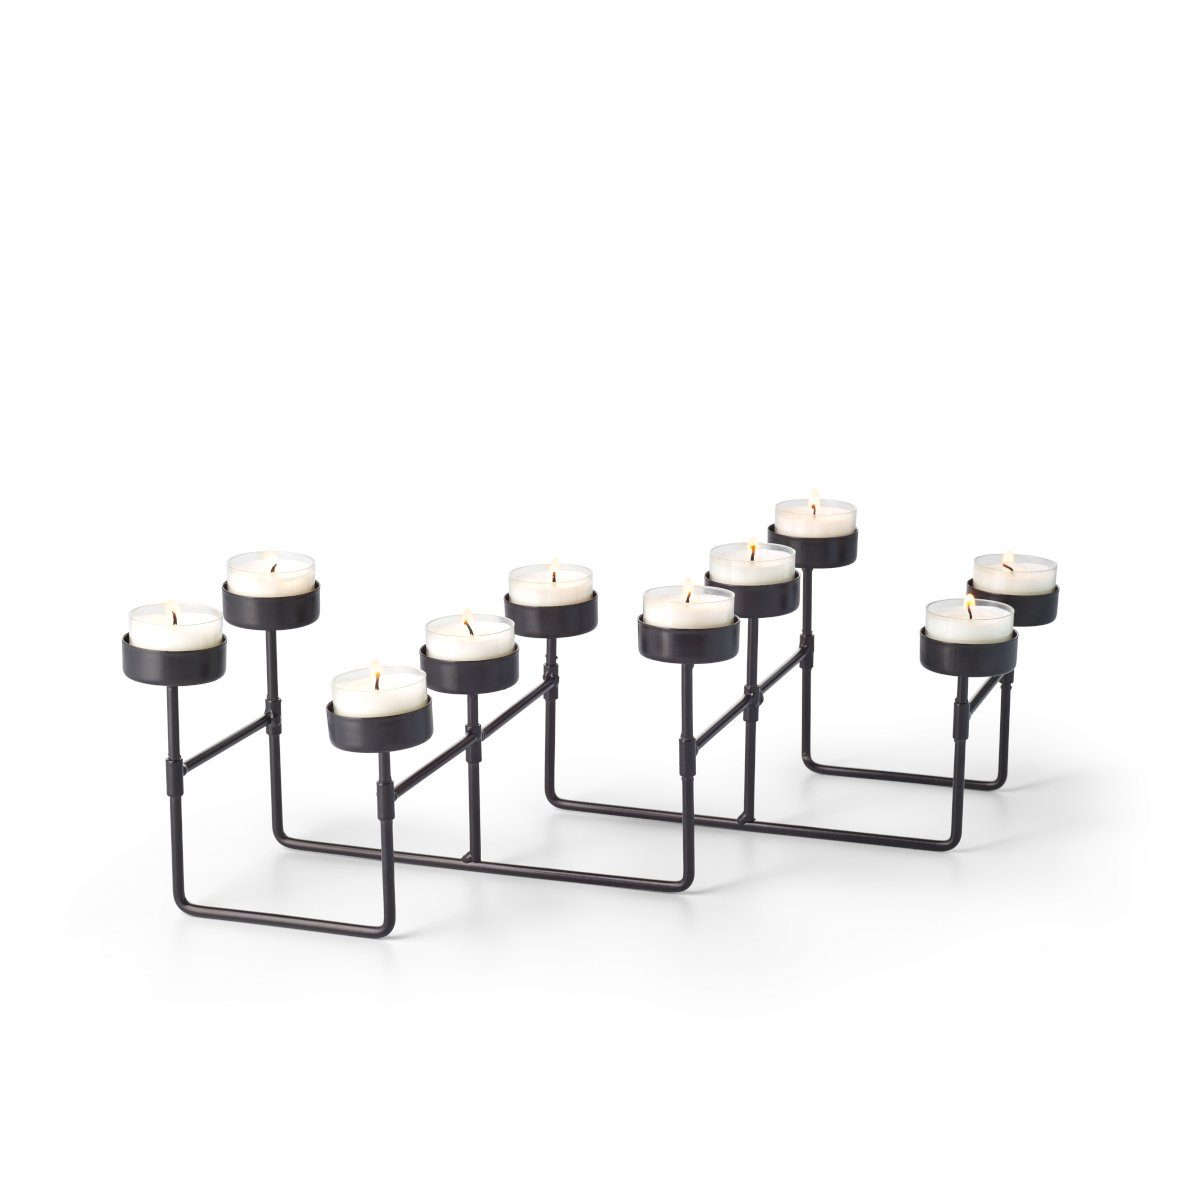 PHILIPPI Teelichthalter Teelichthalter ausziehbar LAB, Länge ausziehbar bis 60 cm | Teelichthalter